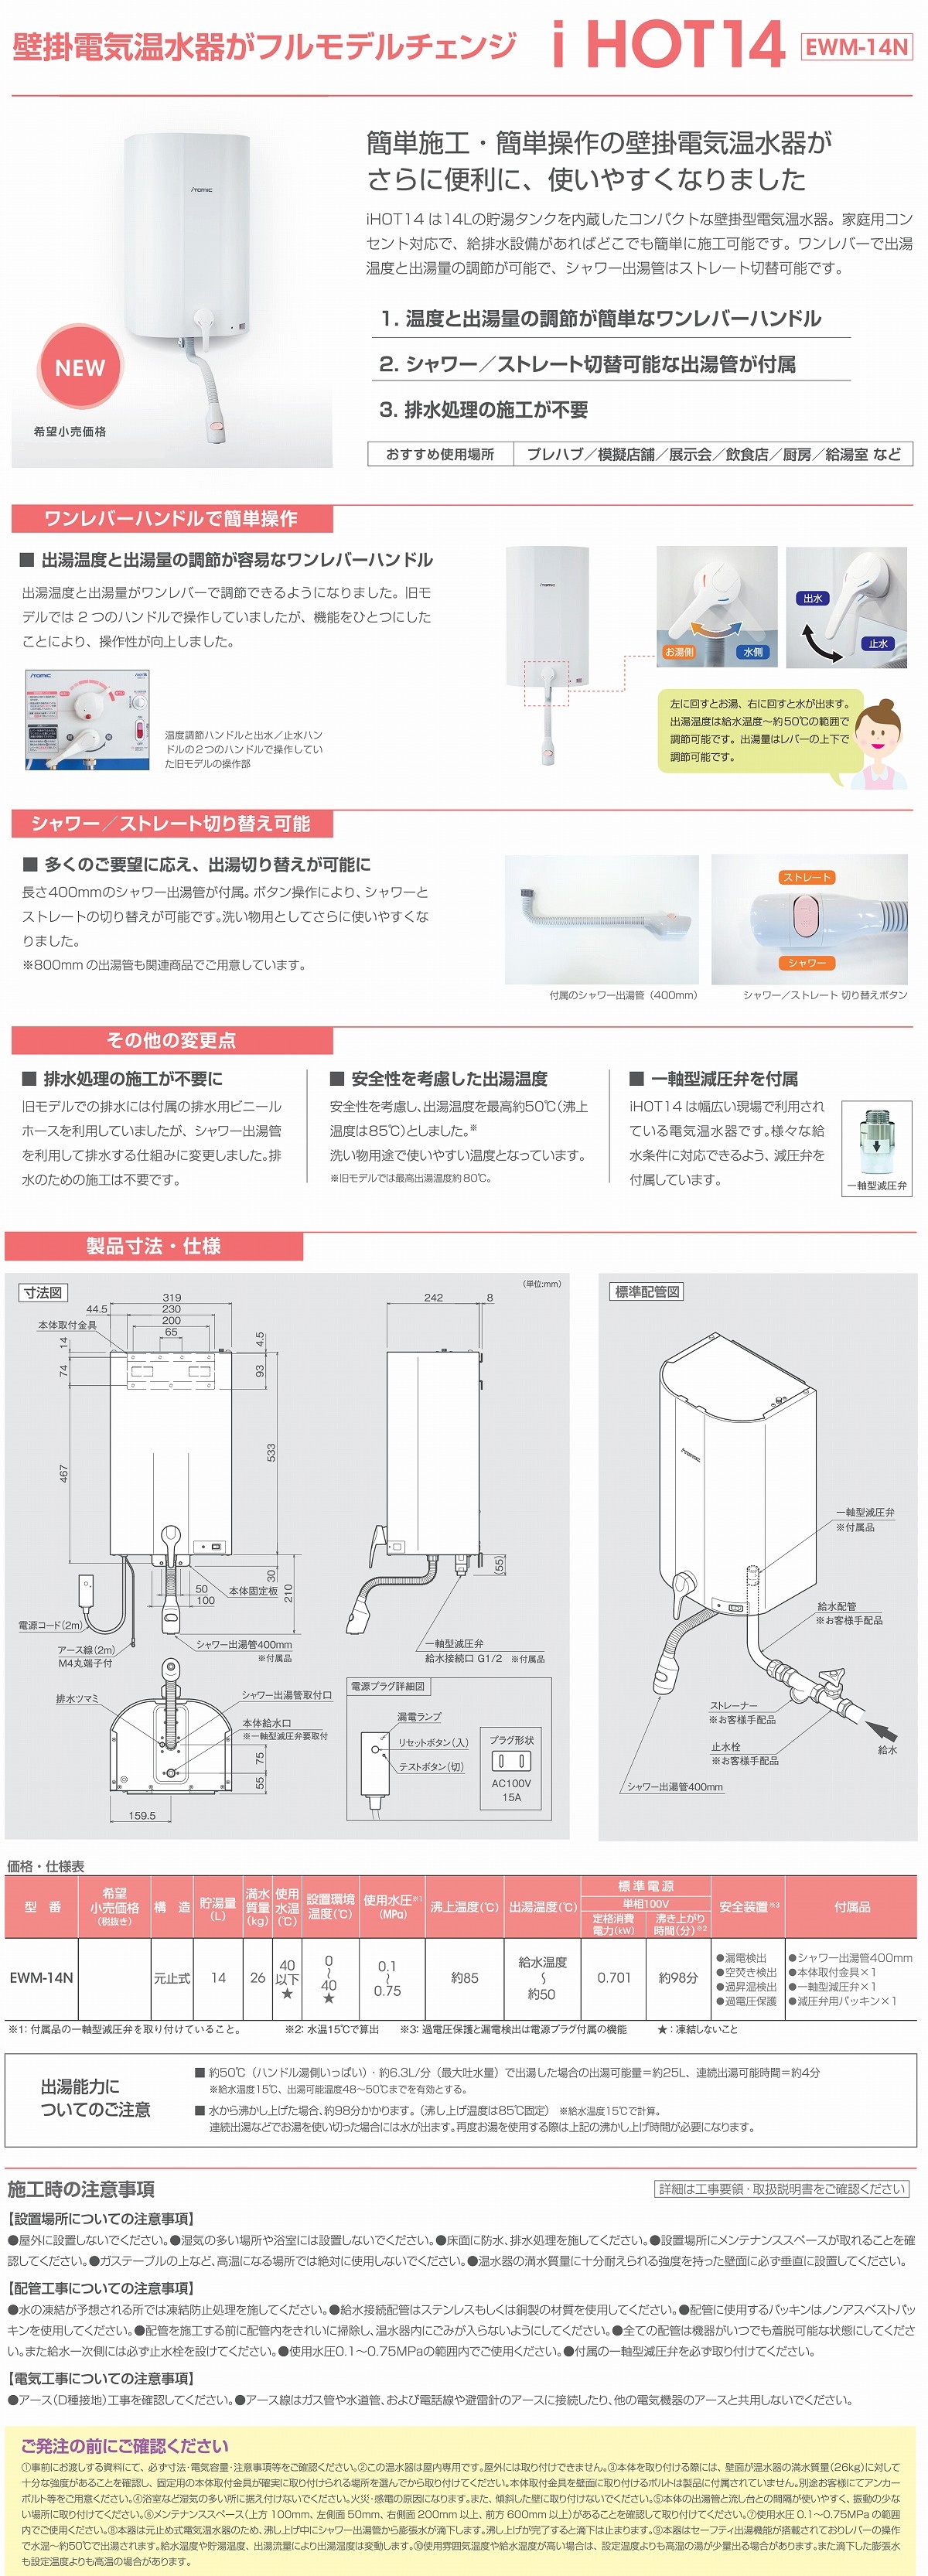 日本イトミック ITOMIC 壁掛貯湯式電気温水器 EWM-14N iHOT14 アイホット14 元止式 壁設置 温度変更可 専用水栓 簡単 - 1